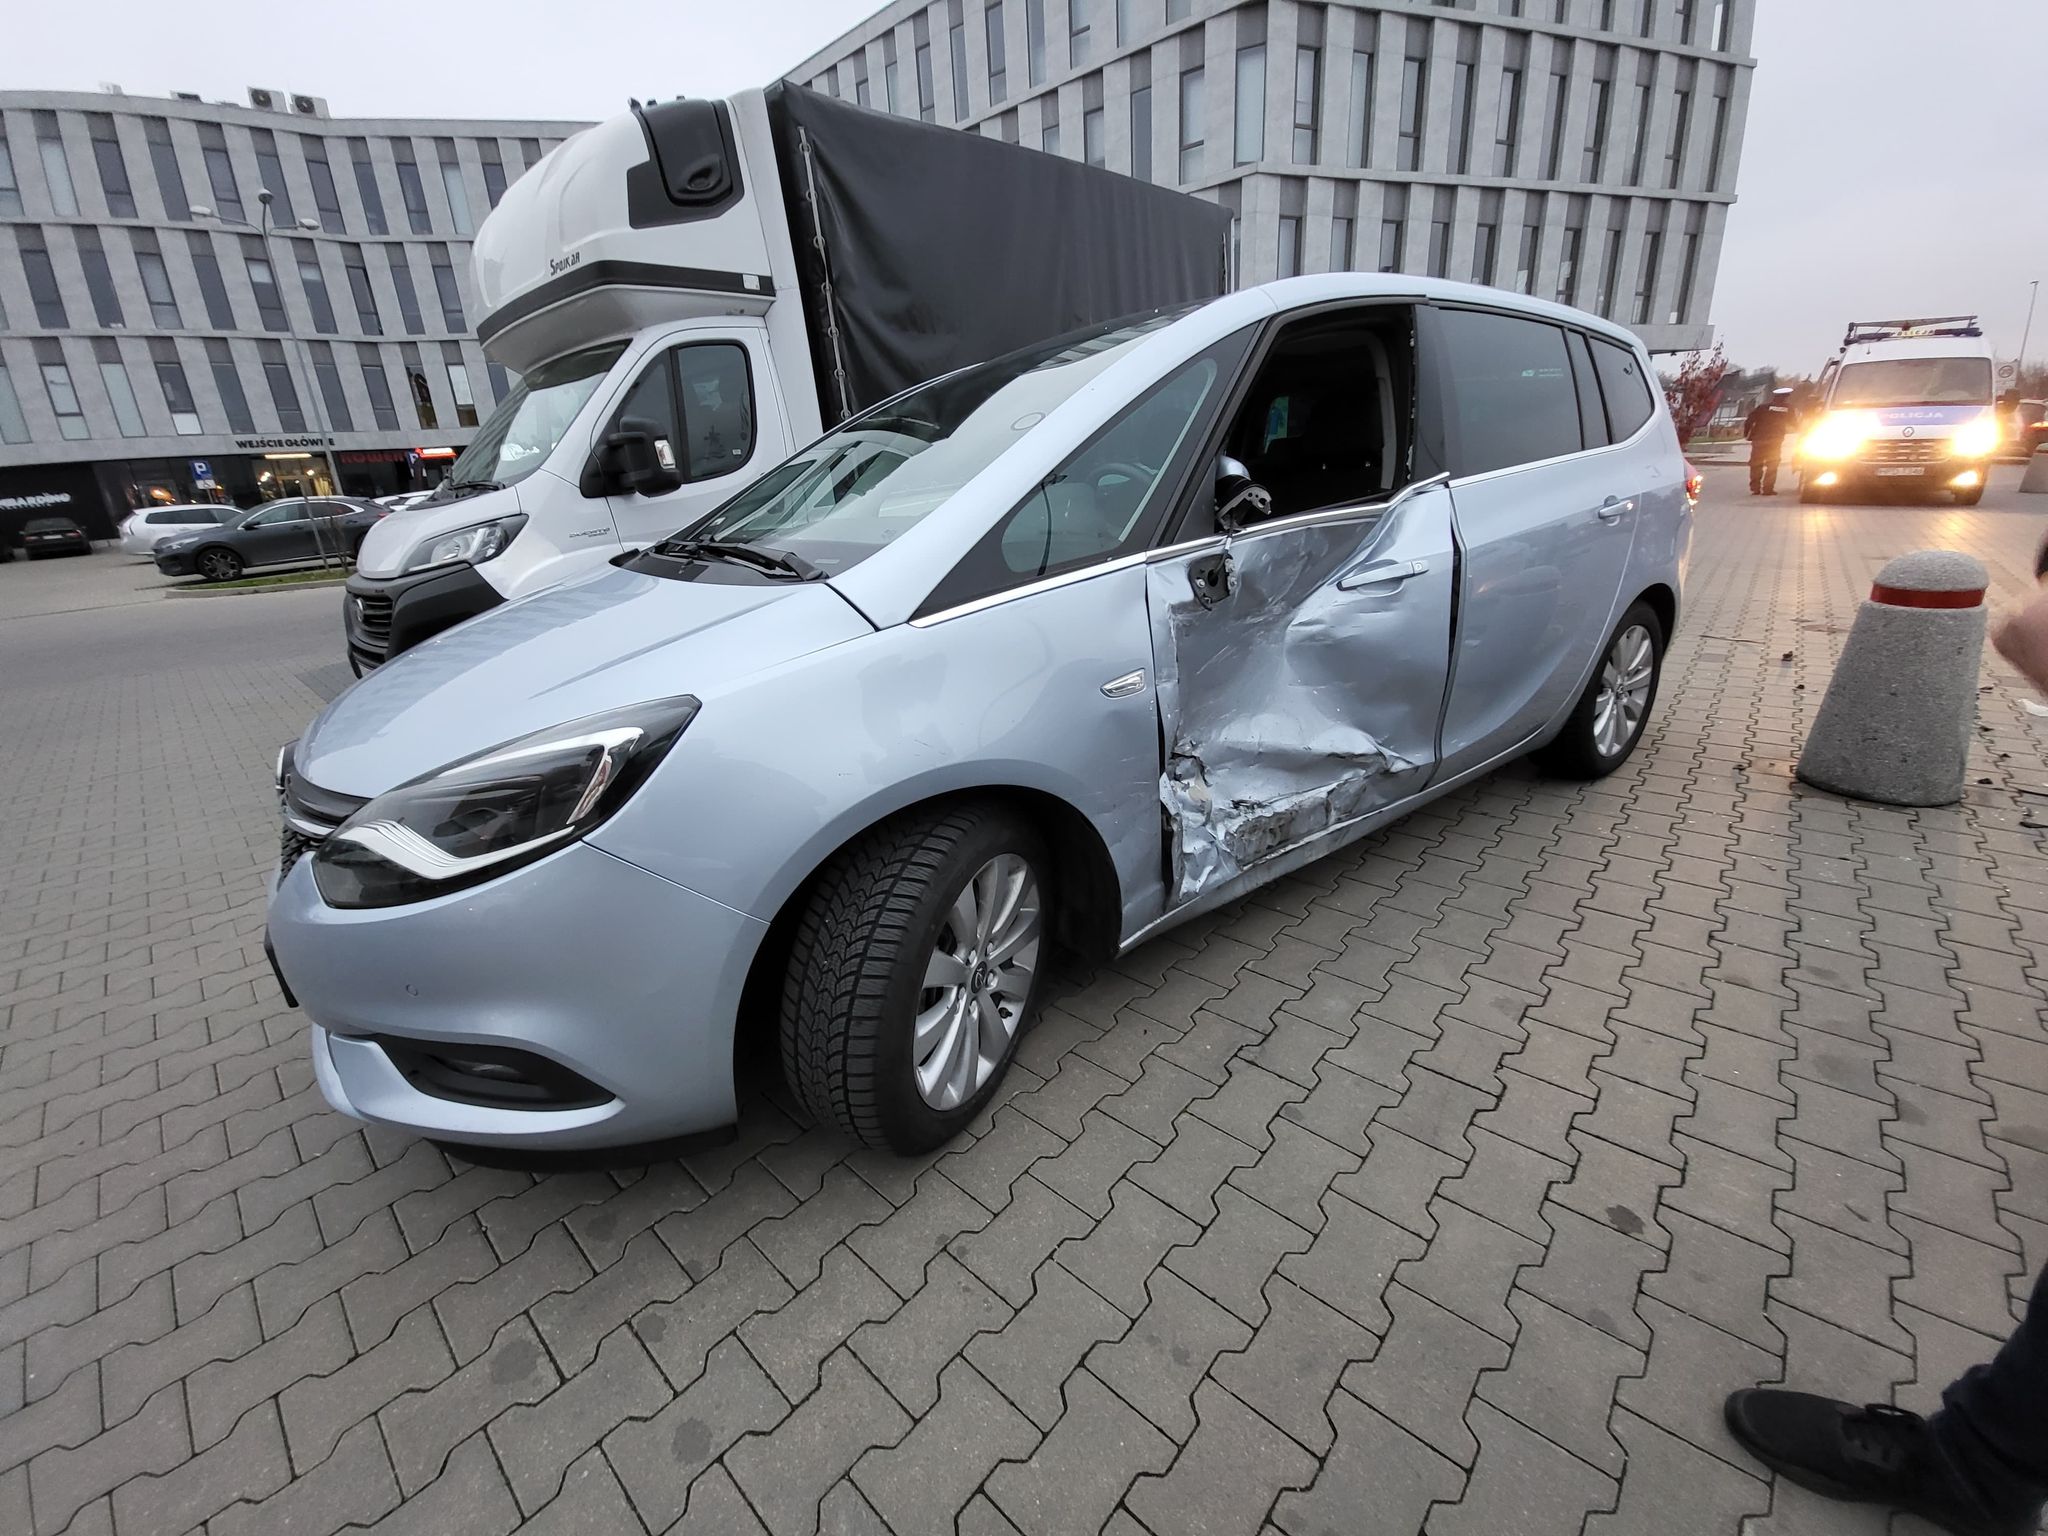 Wypadek na parkingu przed marketem. Pięć samochodów uszkodzonych i jedna osoba w szpitalu (zdjęcia)